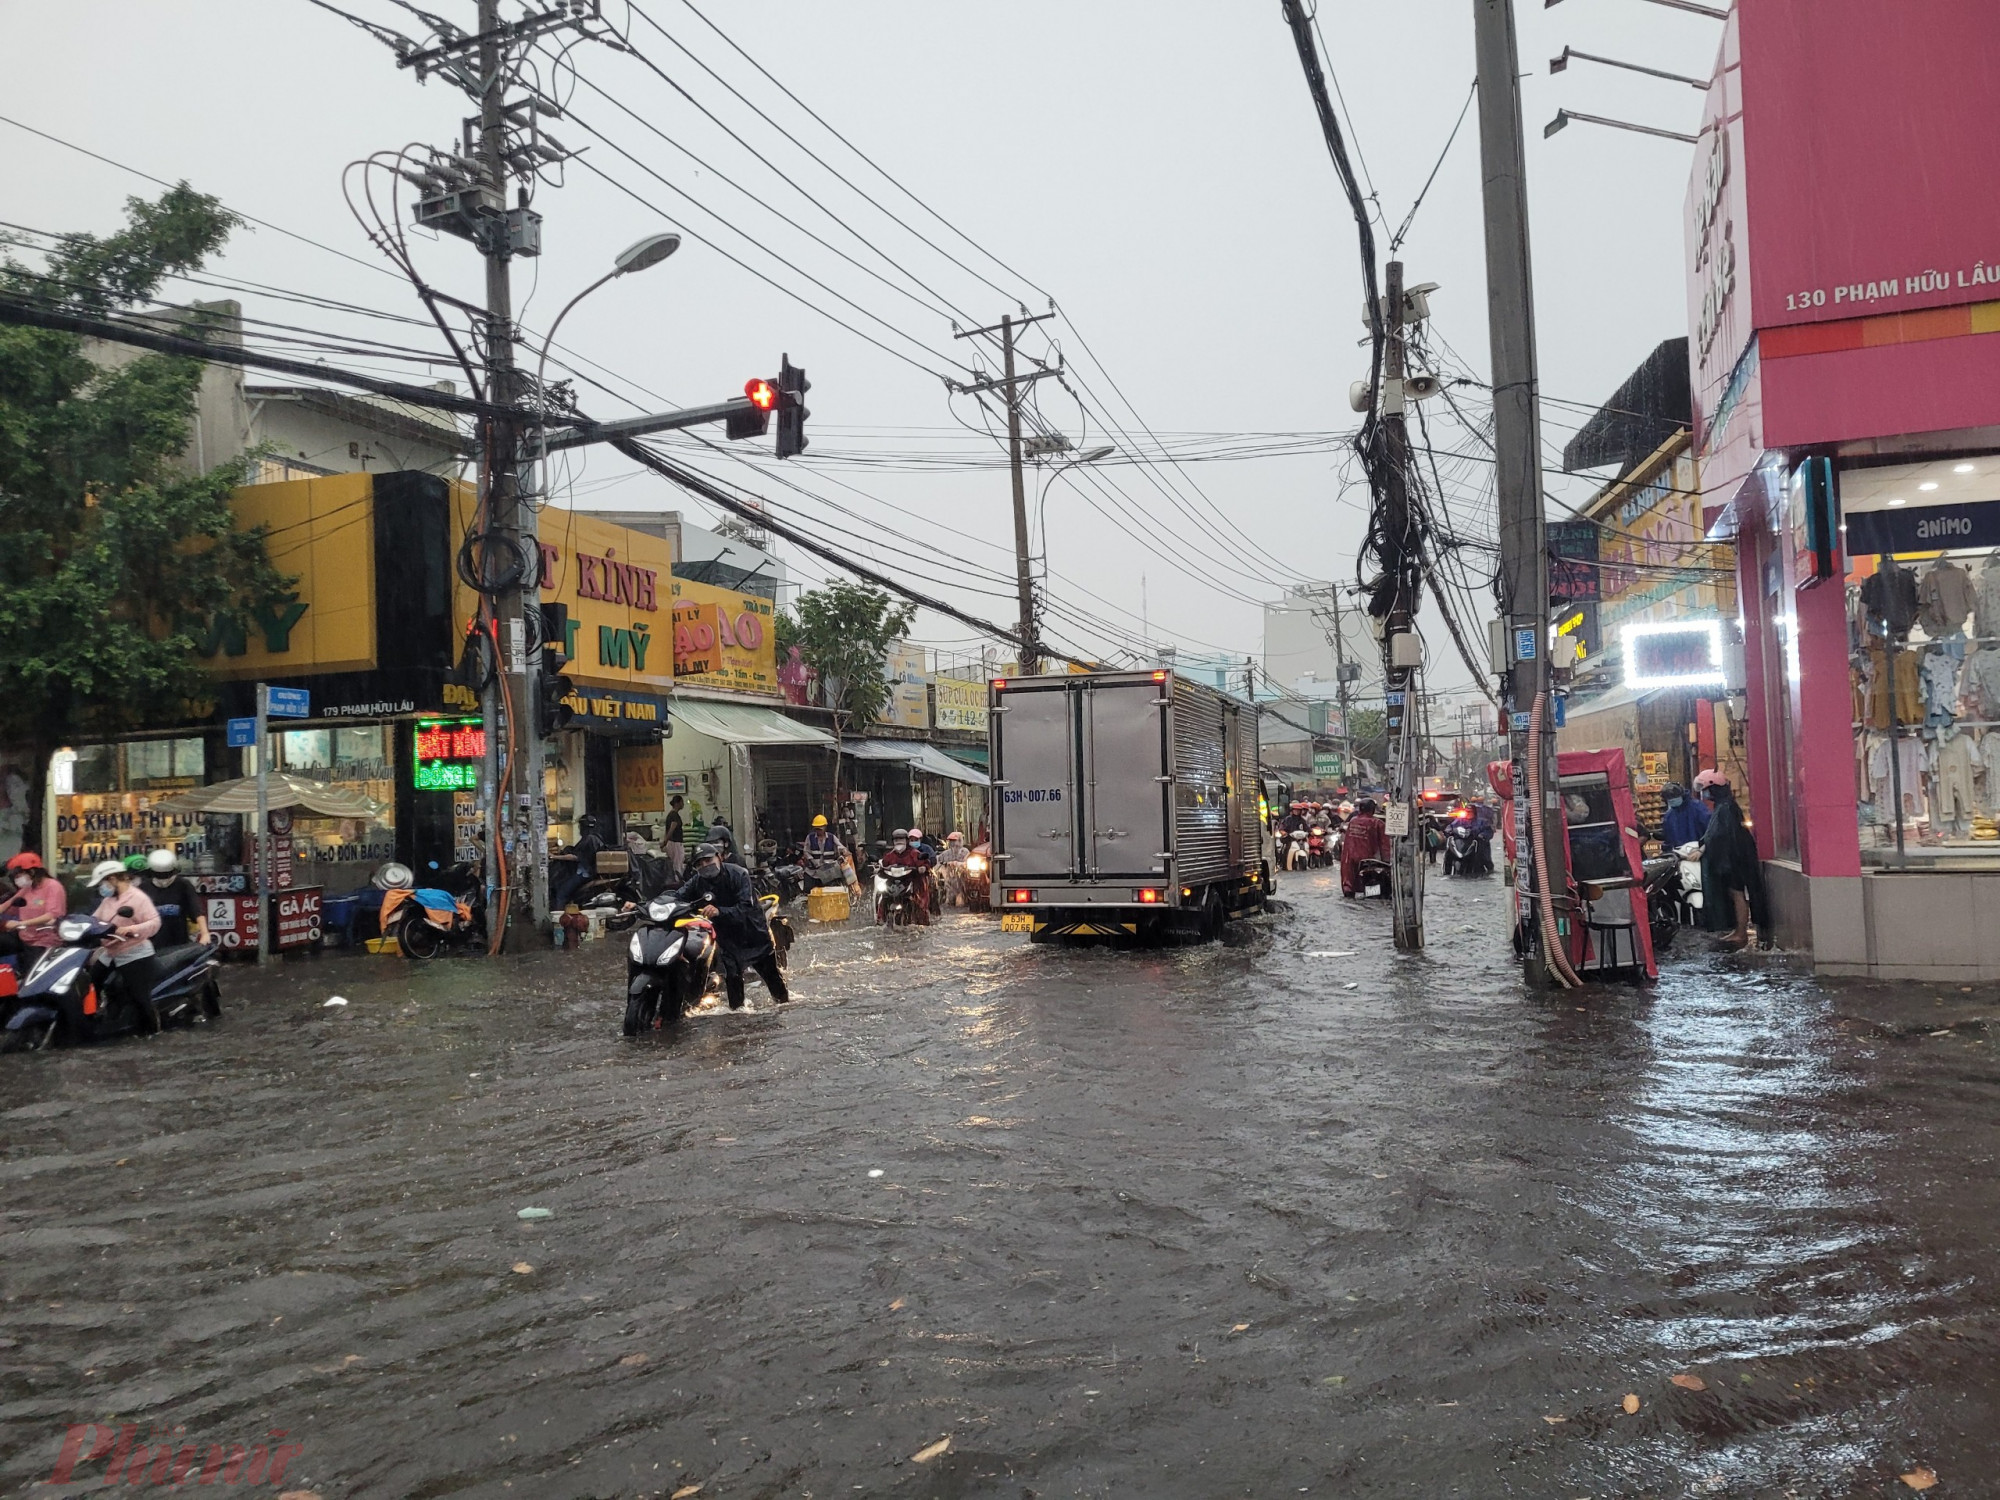 Cơn mưa lớn khiến nhiều tuyến đường ở quận 7 ngập nước. Trong ảnh: Đường Nguyễn Lương Bằng lênh láng nước, nhiều phương tiện chết máy. Ảnh: Thu Lê